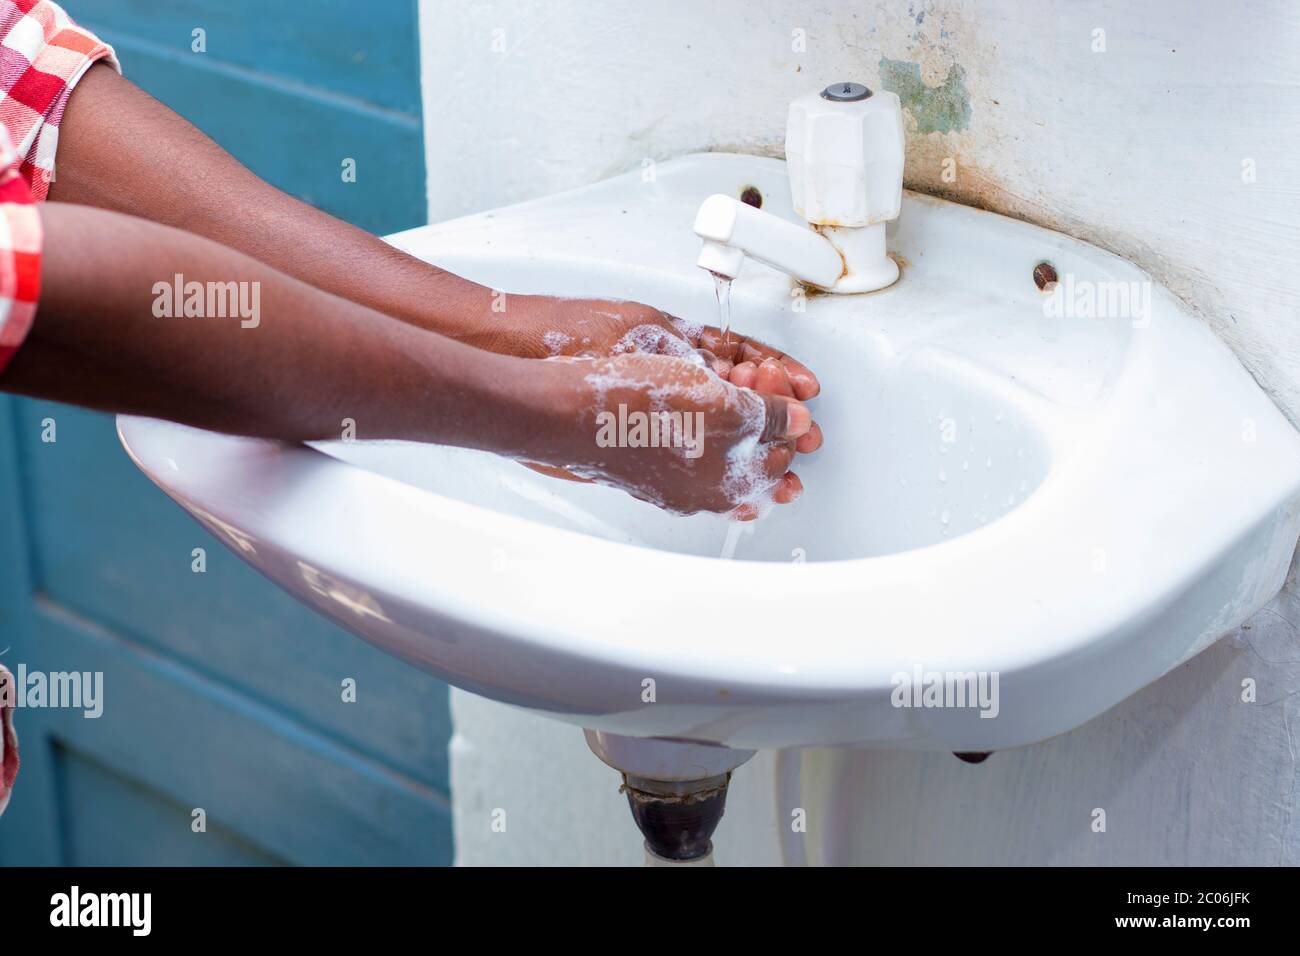 un homme se lavant les mains au savon pour maintenir l'hygiène.restez en bonne santé.évitez les germes et les virus. Banque D'Images